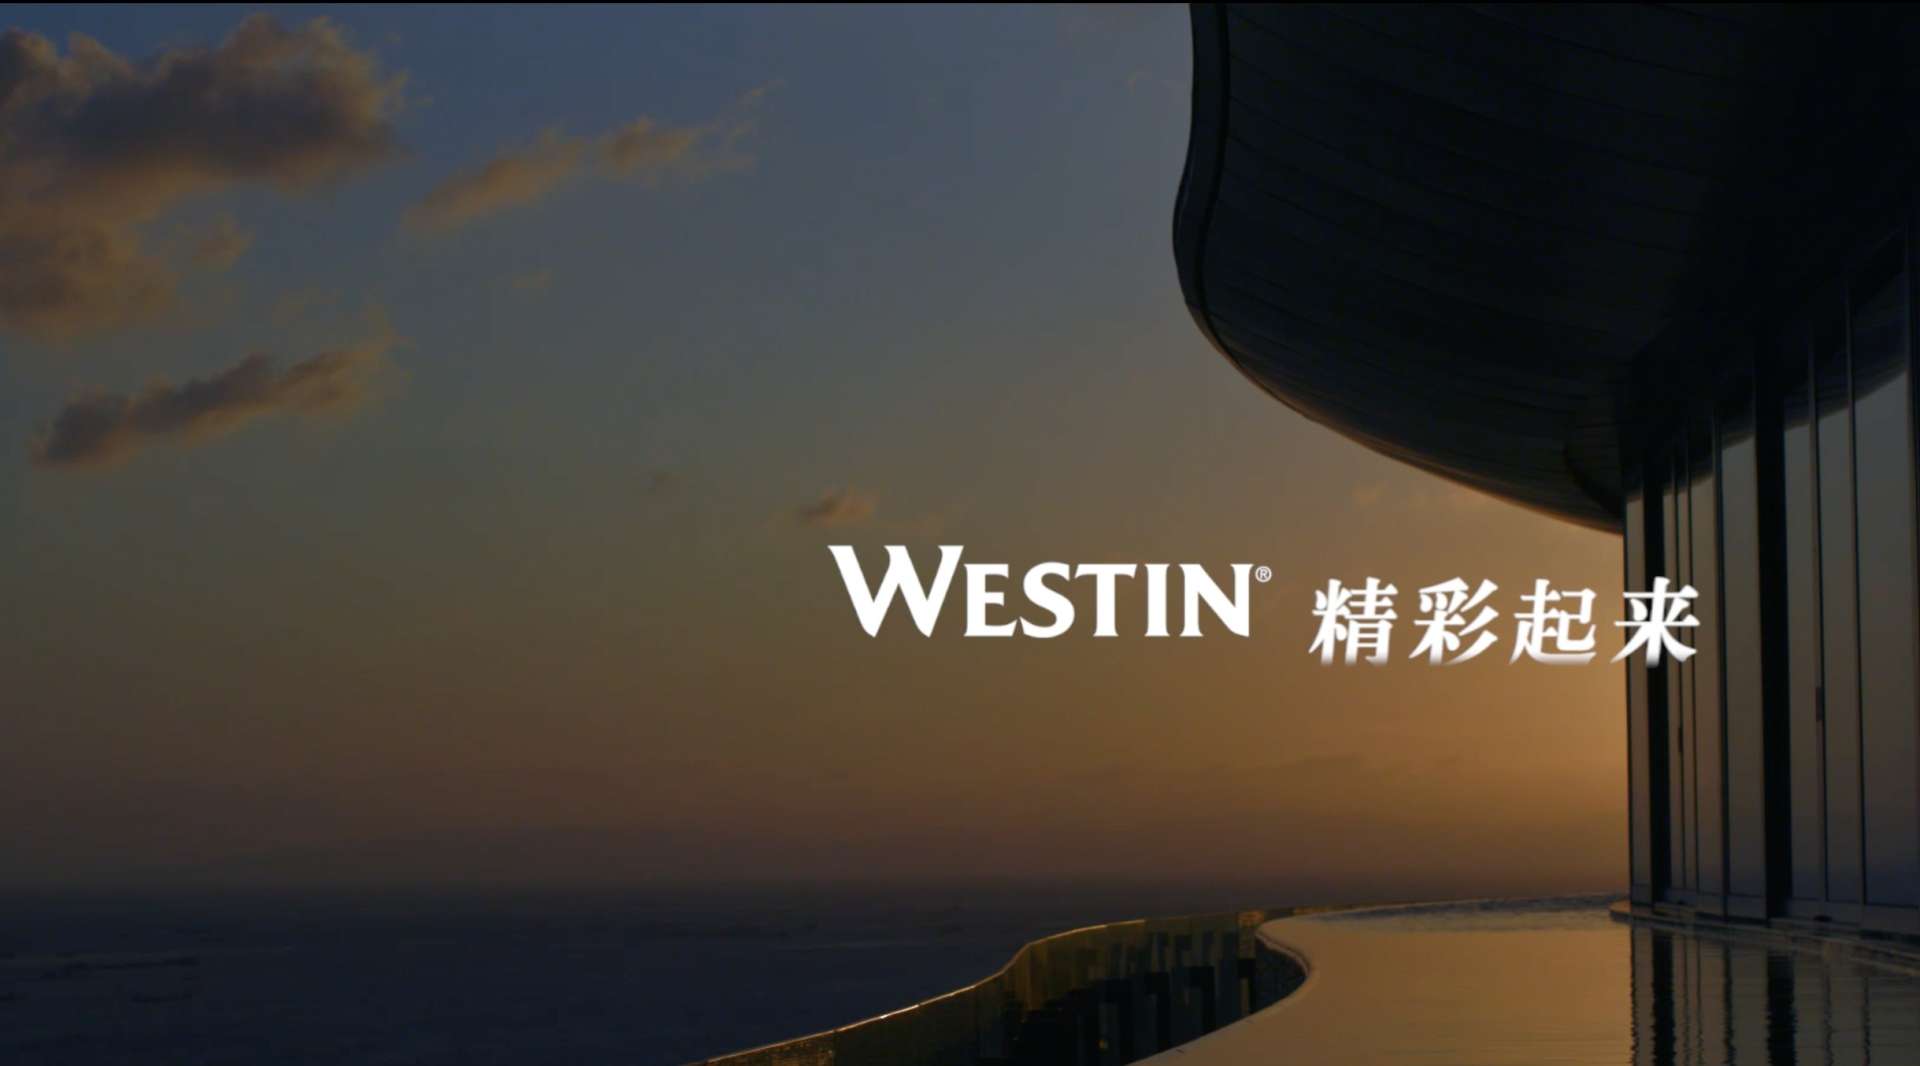 Westin 海南蓝湾威斯汀酒店2019 TVC